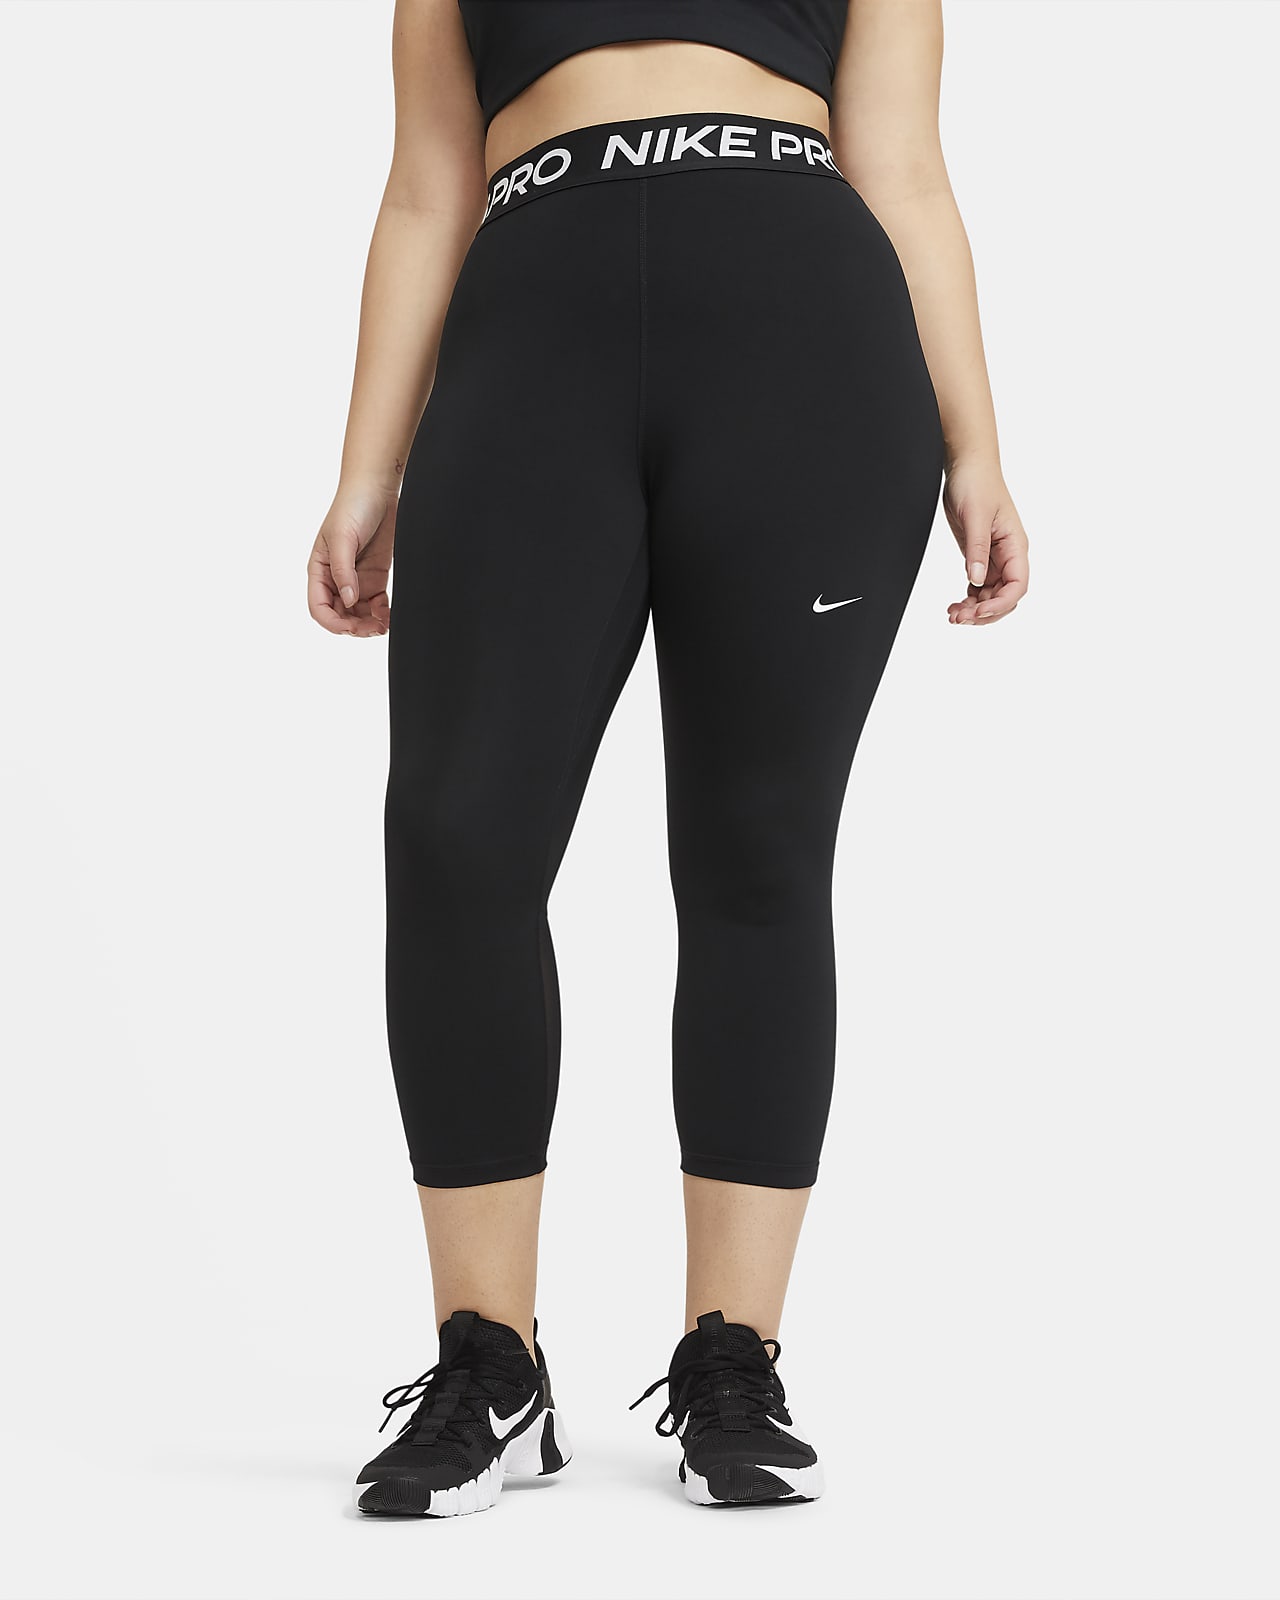 Γυναικείο κολάν crop μεσαίου ύψους Nike Pro (μεγάλα μεγέθη)